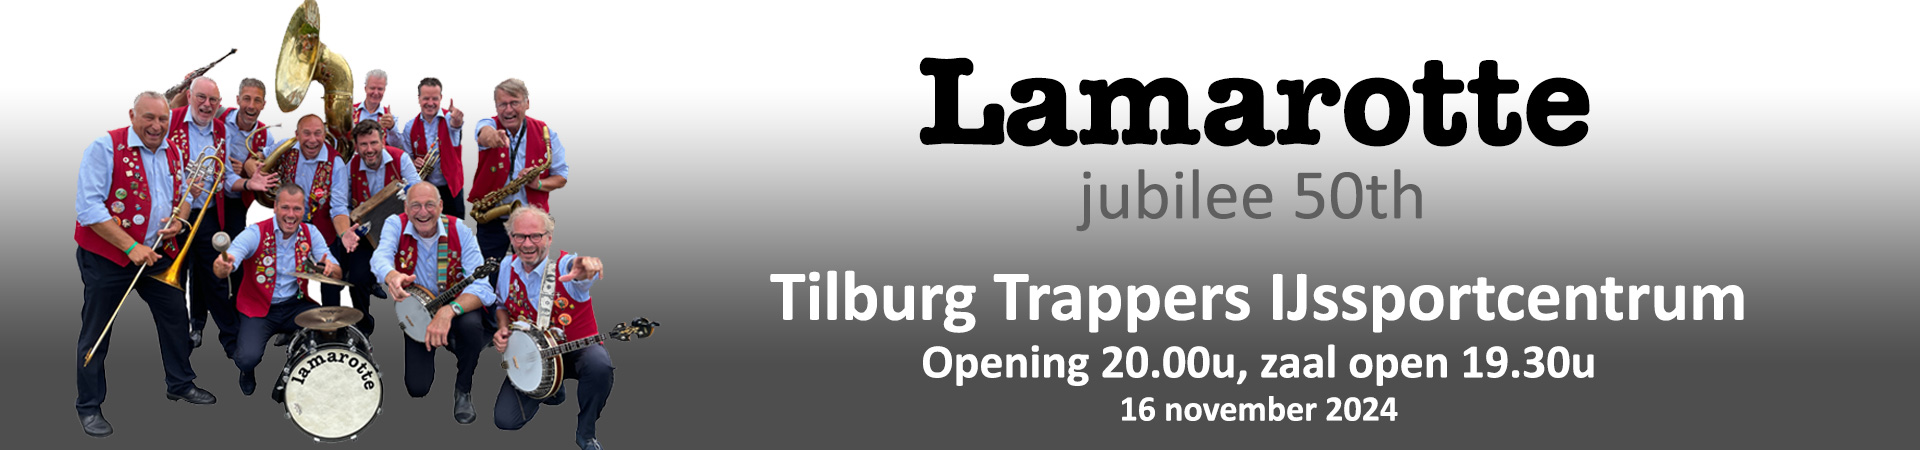 Lamarotte Jazzband jubileum tickets 2024